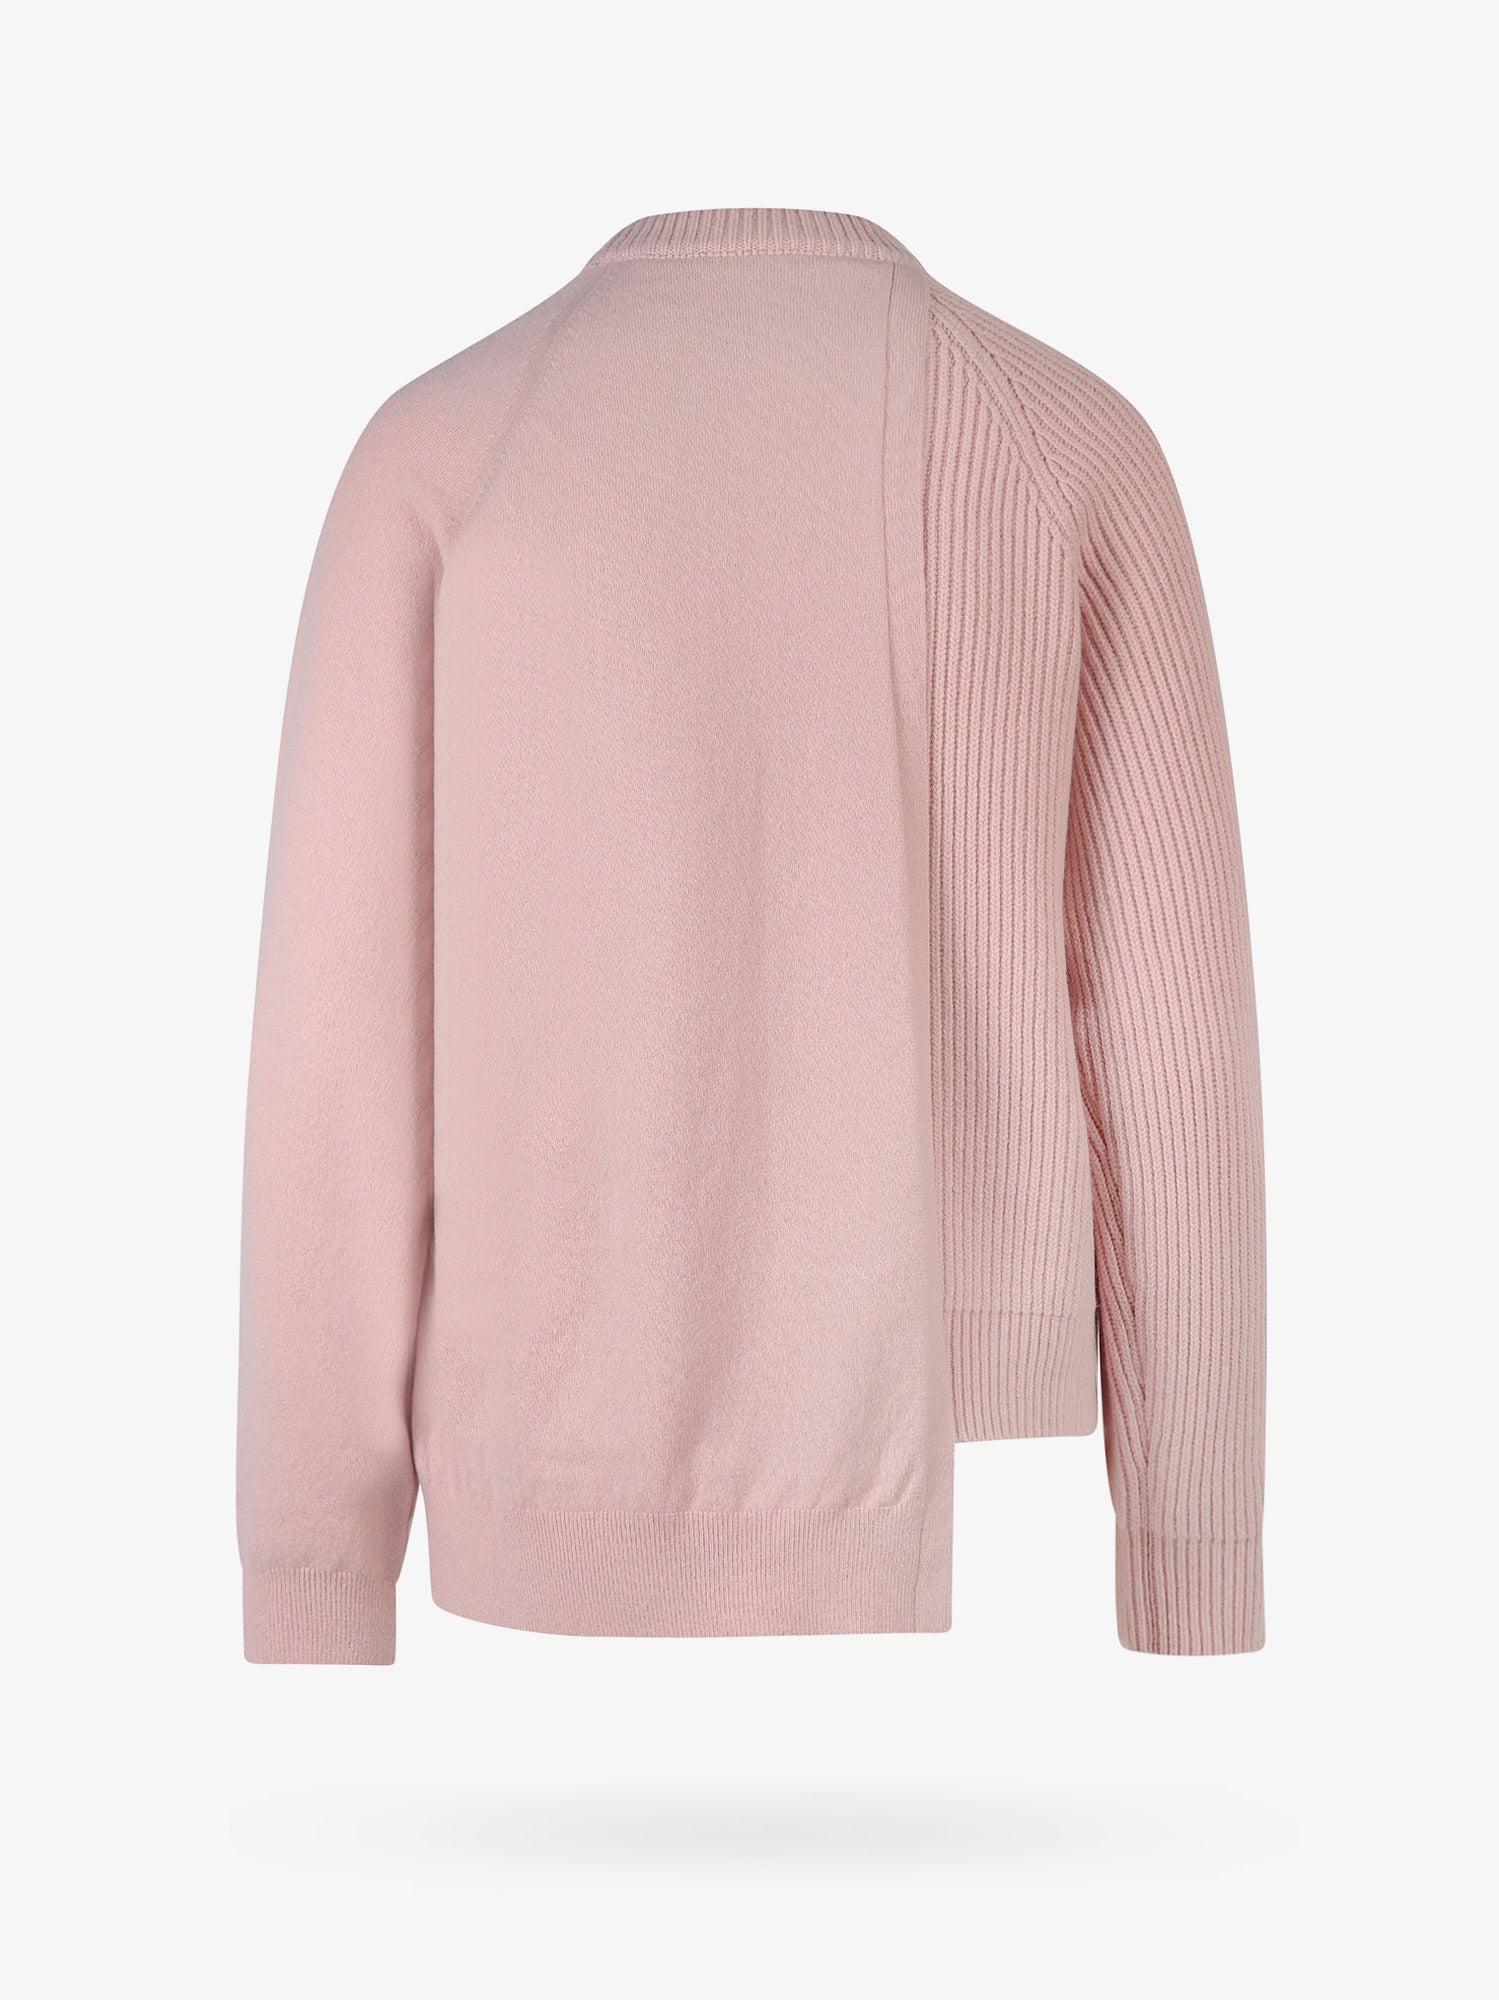 Fendi Crew Neck Long Sleeves Knitwear in Pink | Lyst